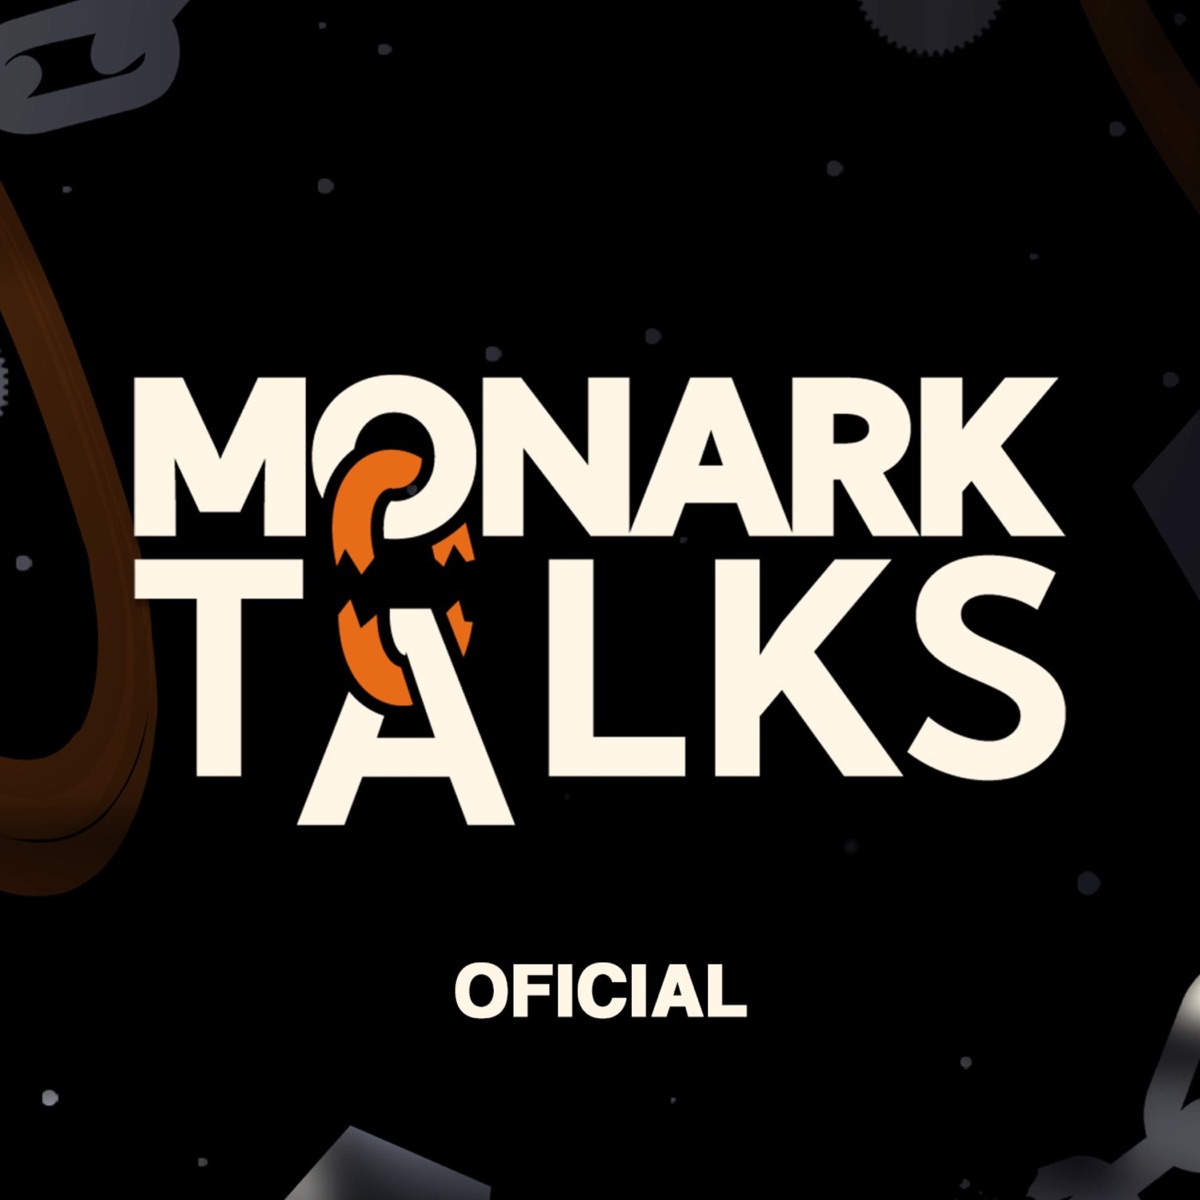 Monark Talks [OFICIAL]: ARTHUR PETRY - Monark Talks #195 on Apple